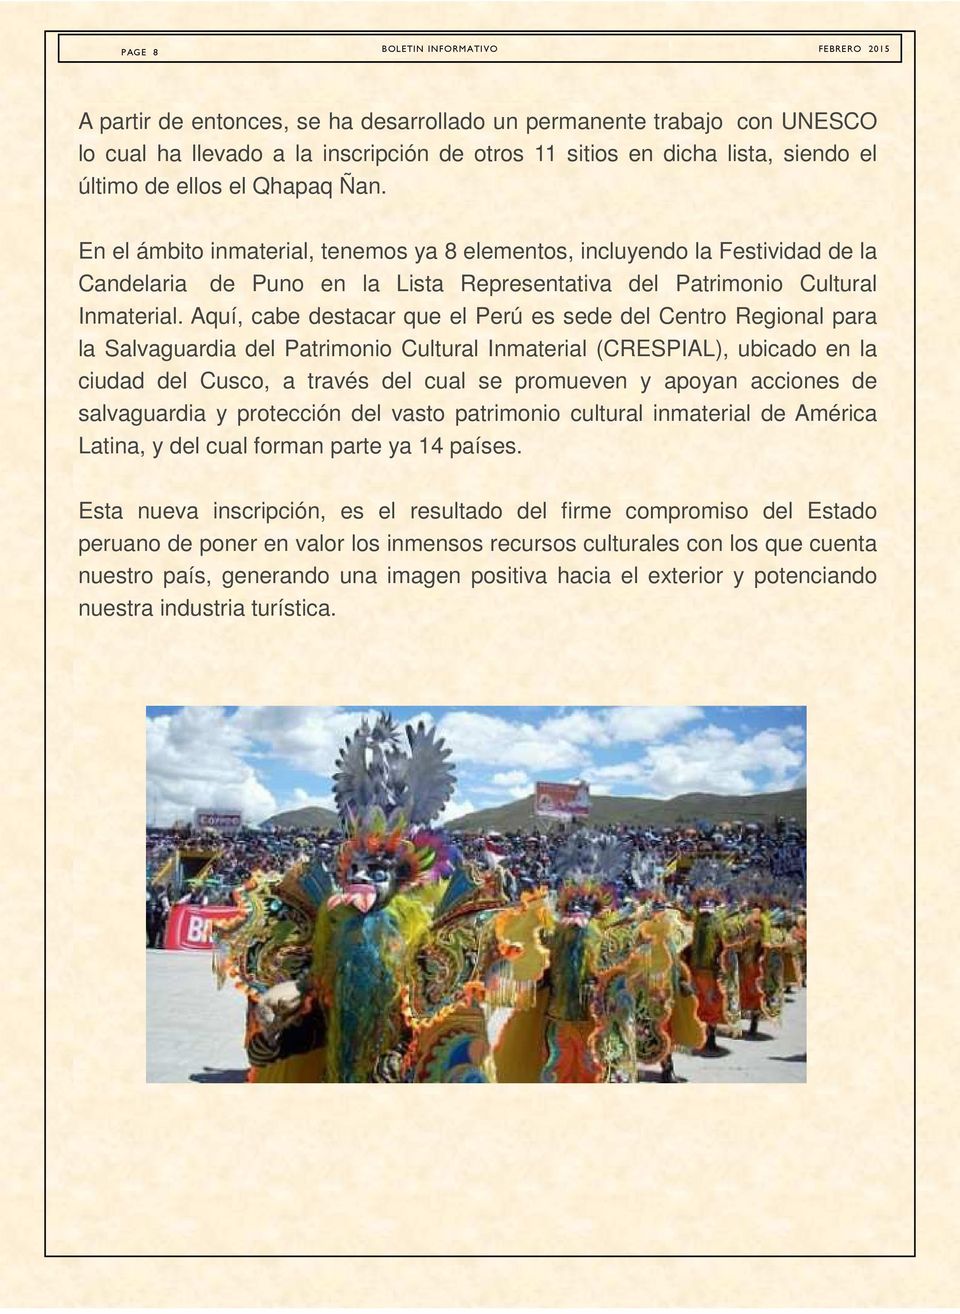 Aquí, cabe destacar que el Perú es sede del Centro Regional para la Salvaguardia del Patrimonio Cultural Inmaterial (CRESPIAL), ubicado en la ciudad del Cusco, a través del cual se promueven y apoyan